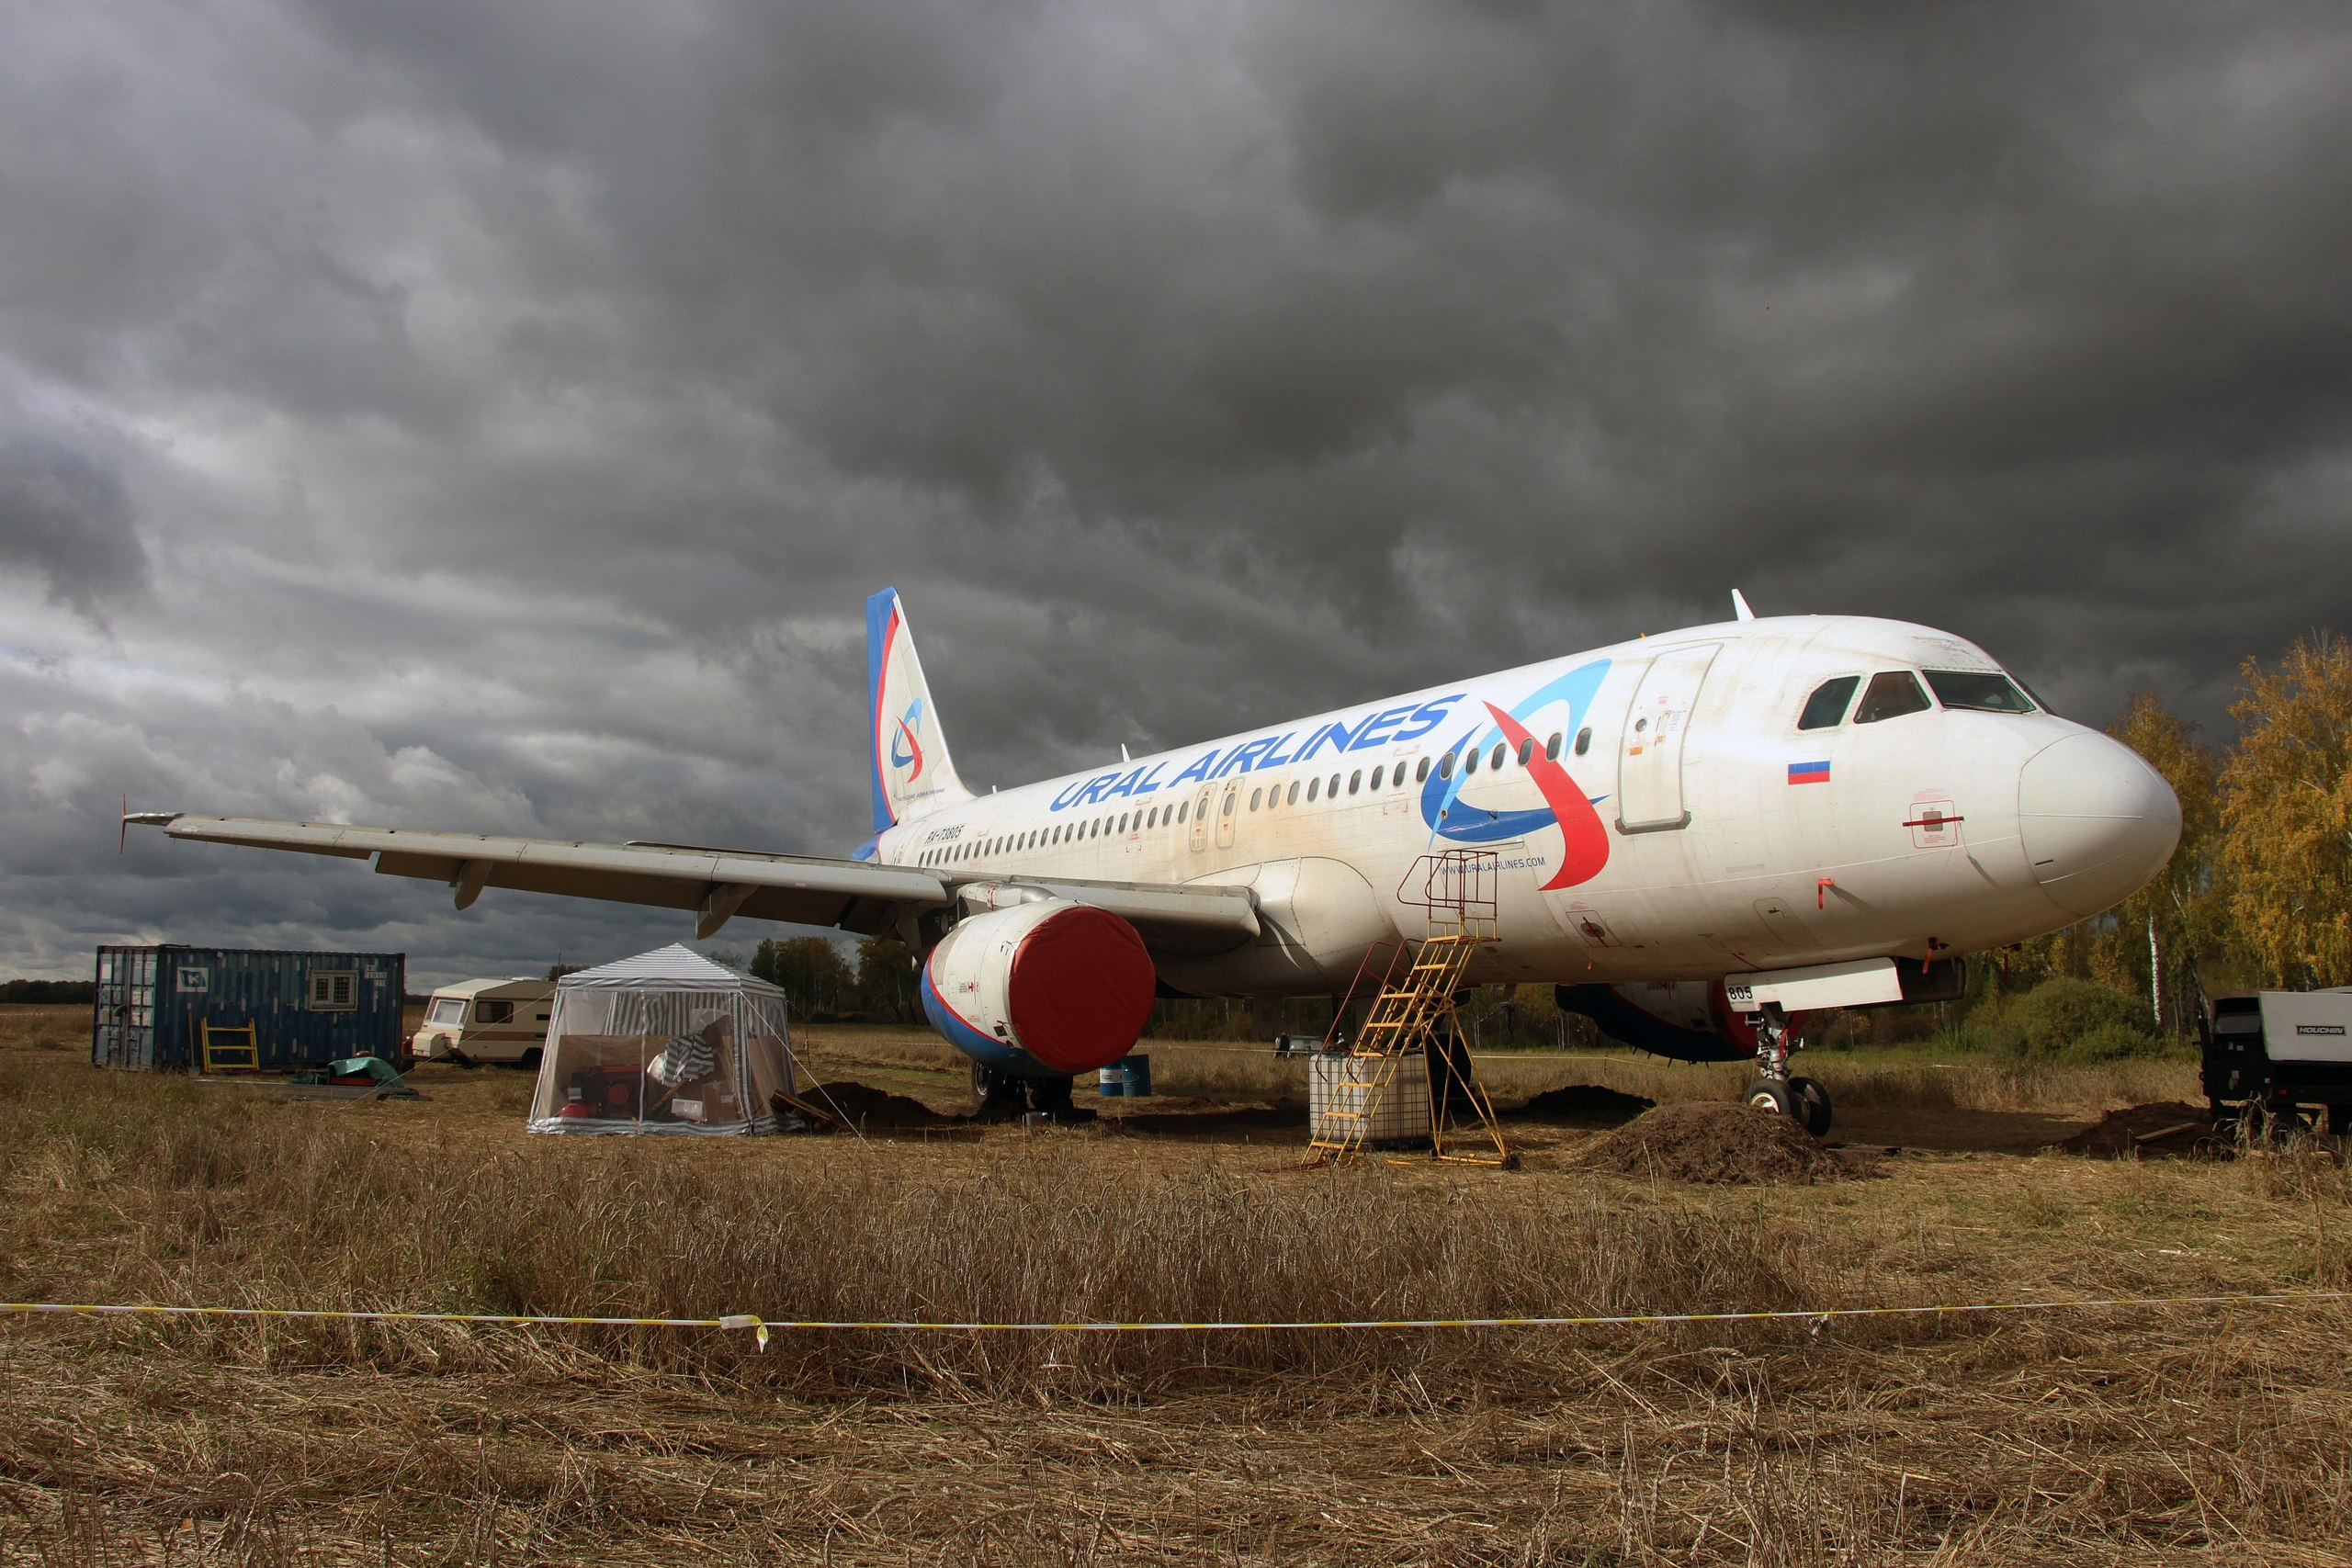 Как чинят самолет, который экстренно приземлился в пшеничном поле в Новосибирской области, — фото с места работ